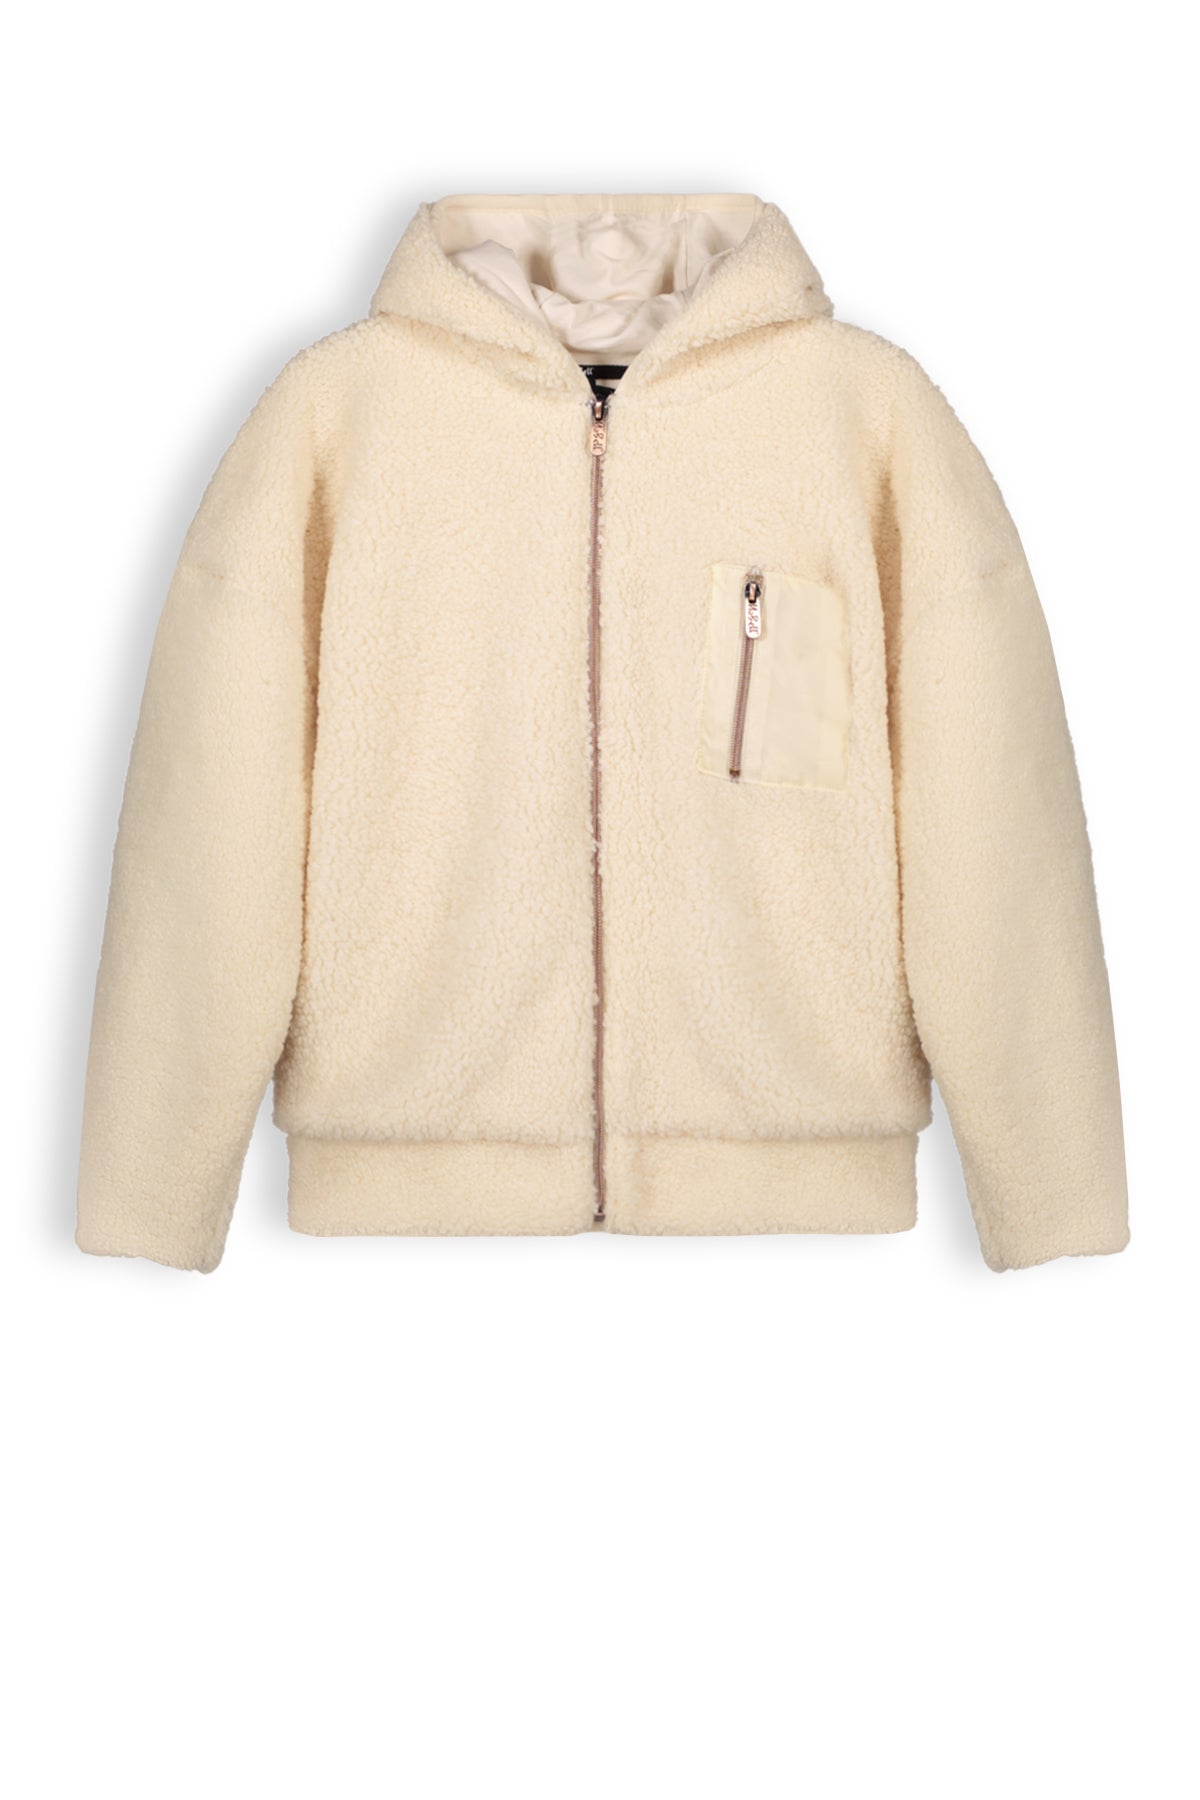 Meisjes Keddy teddy hooded zip up sweater van NoBell in de kleur Pearled Ivory in maat 170-176.